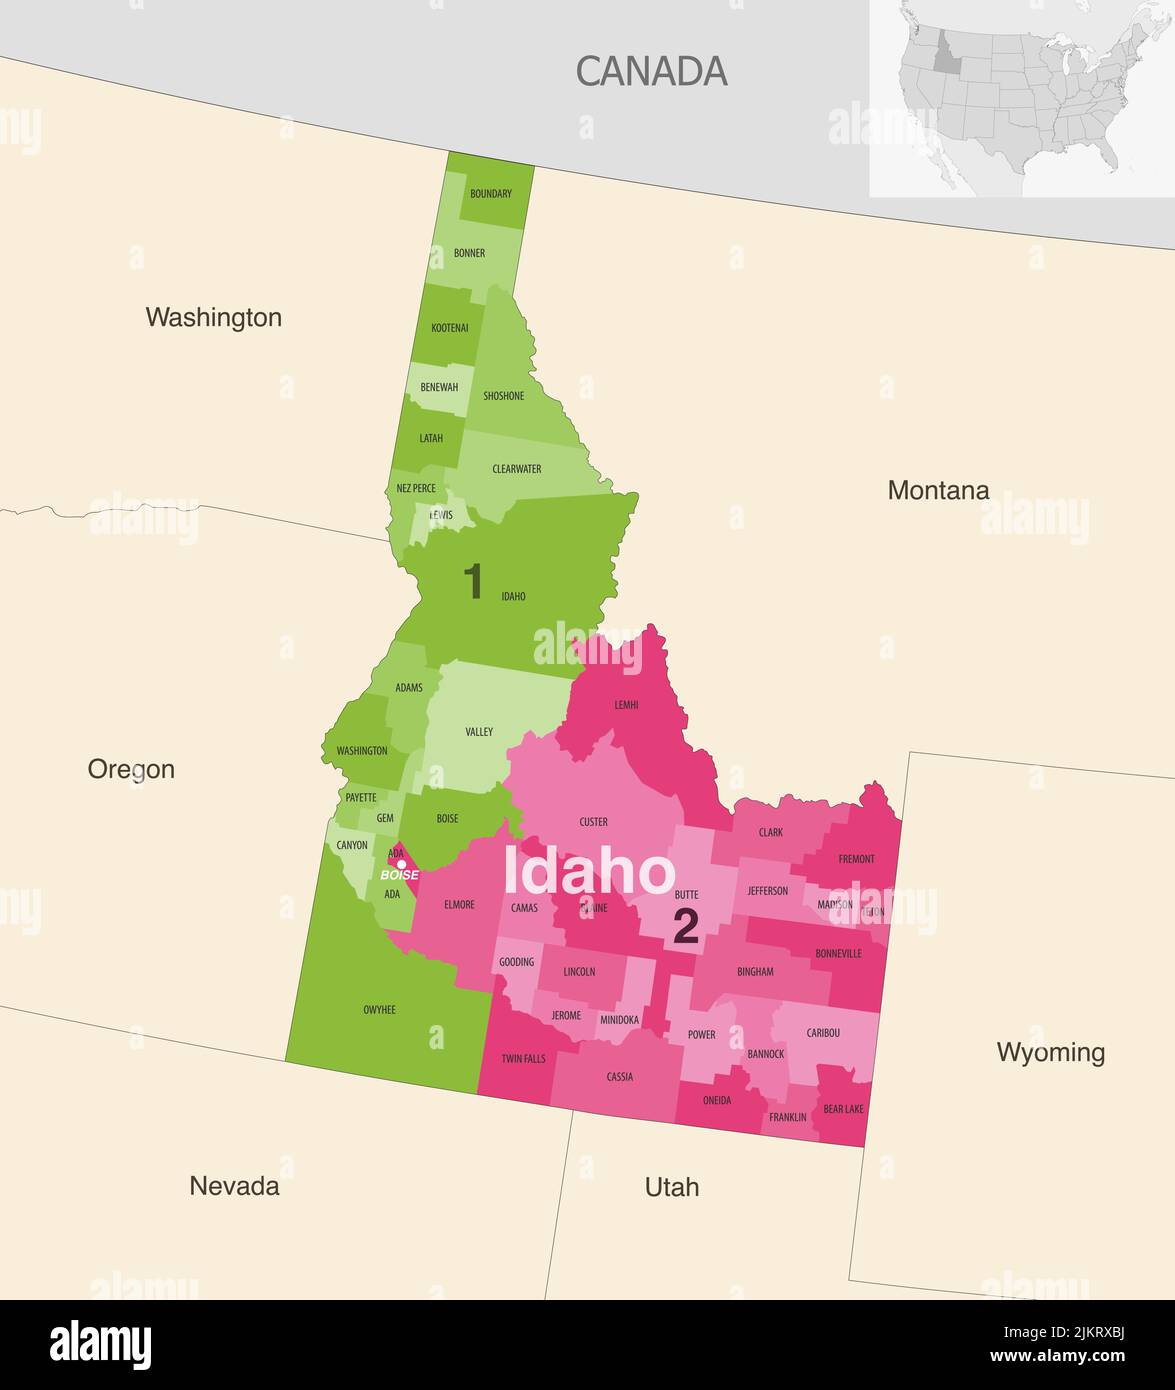 Idaho State Counties von Kongressbezirken farbige Vektorkarte mit benachbarten Staaten und Terrotorien Stock Vektor